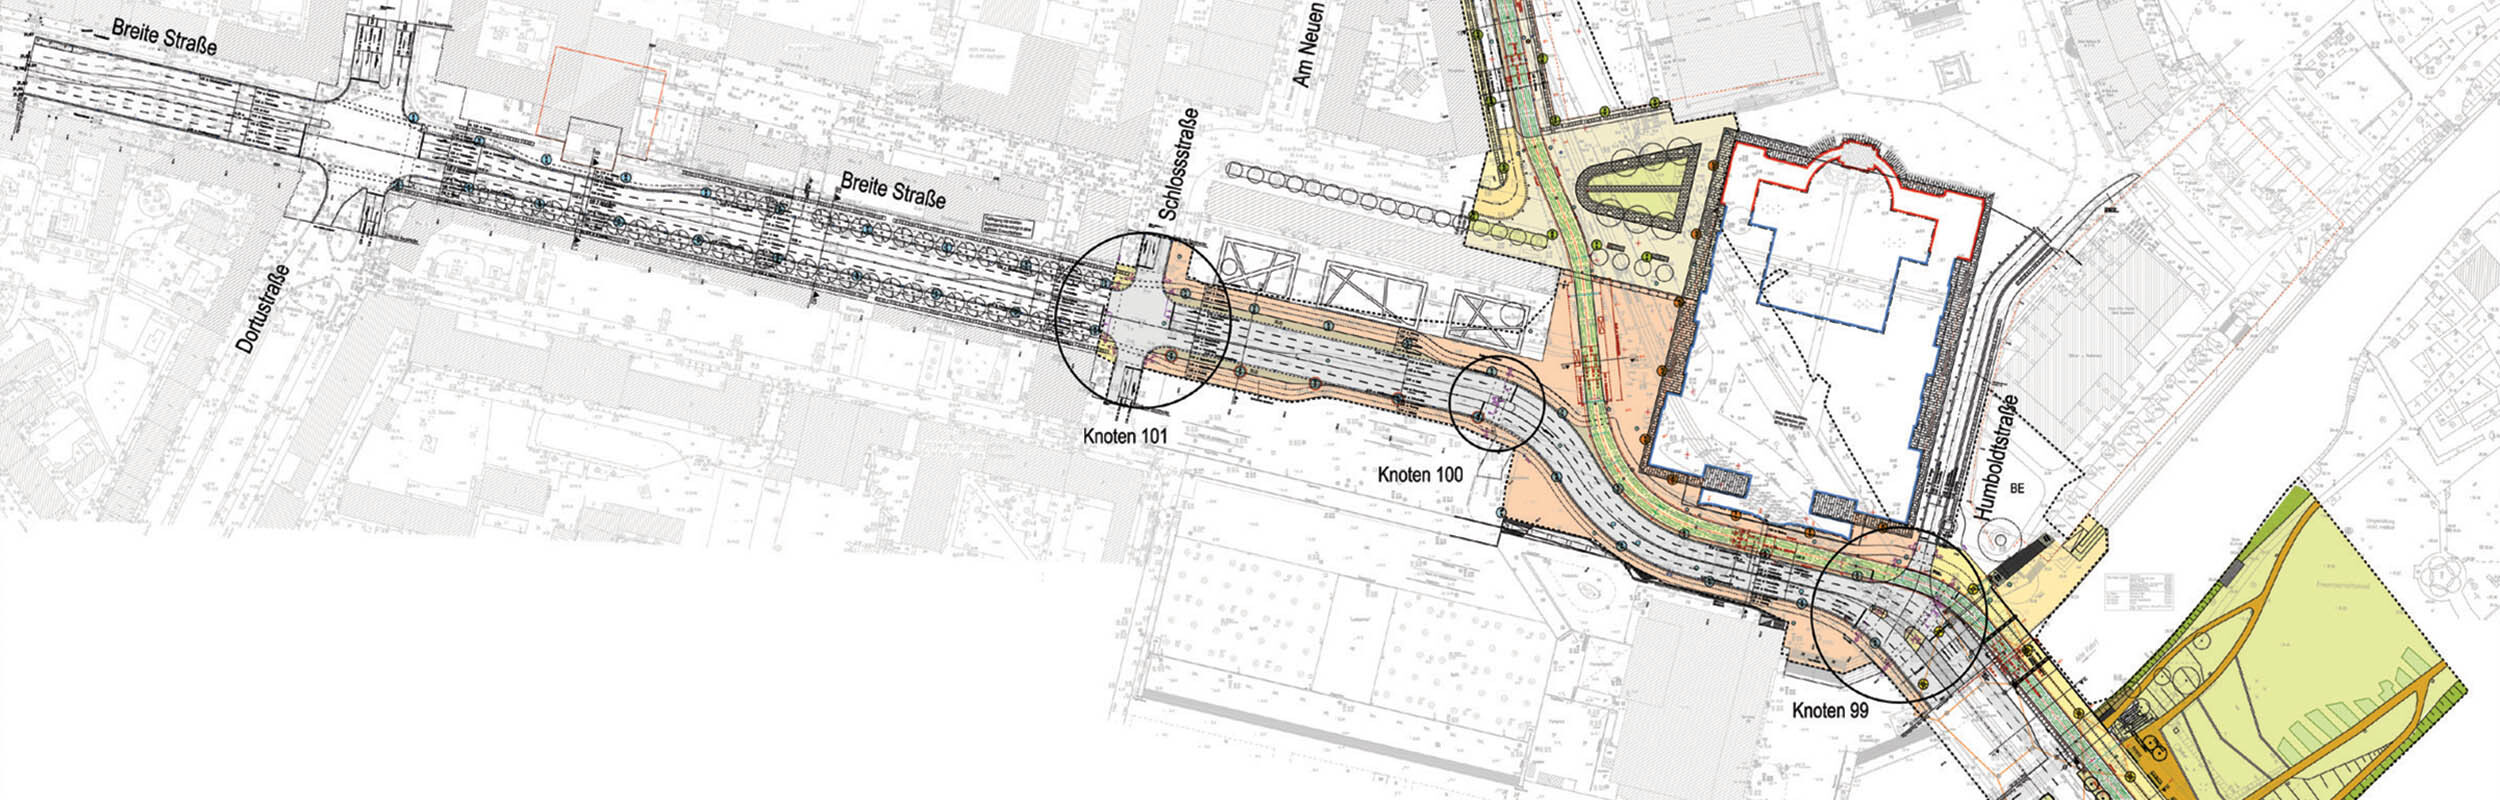 Grafik: Planzeichnung des neuen Straßenverlaufs und Markierung der Knotenpunkte.